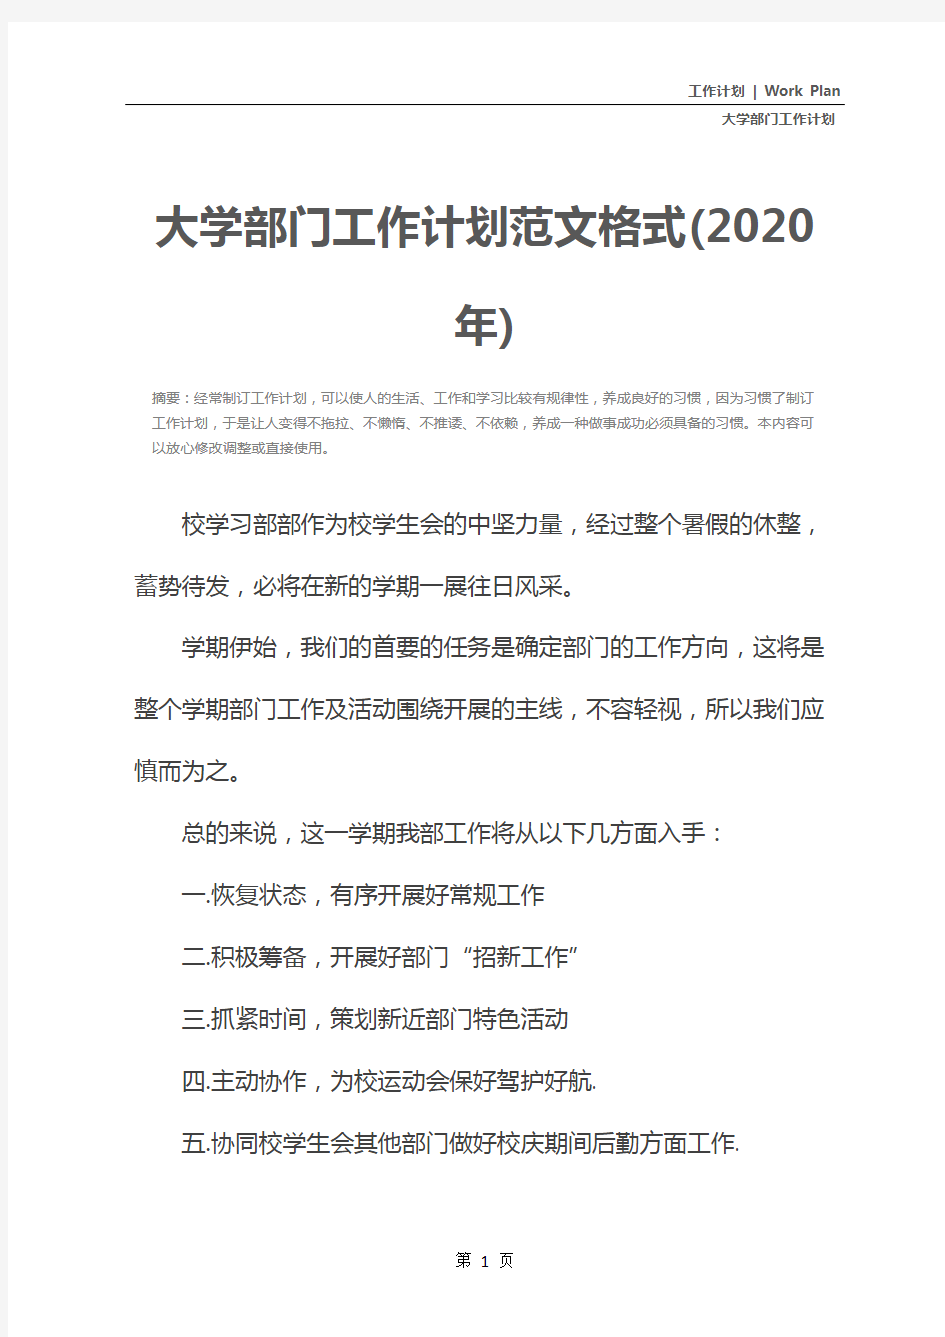 大学部门工作计划范文格式(2020年)